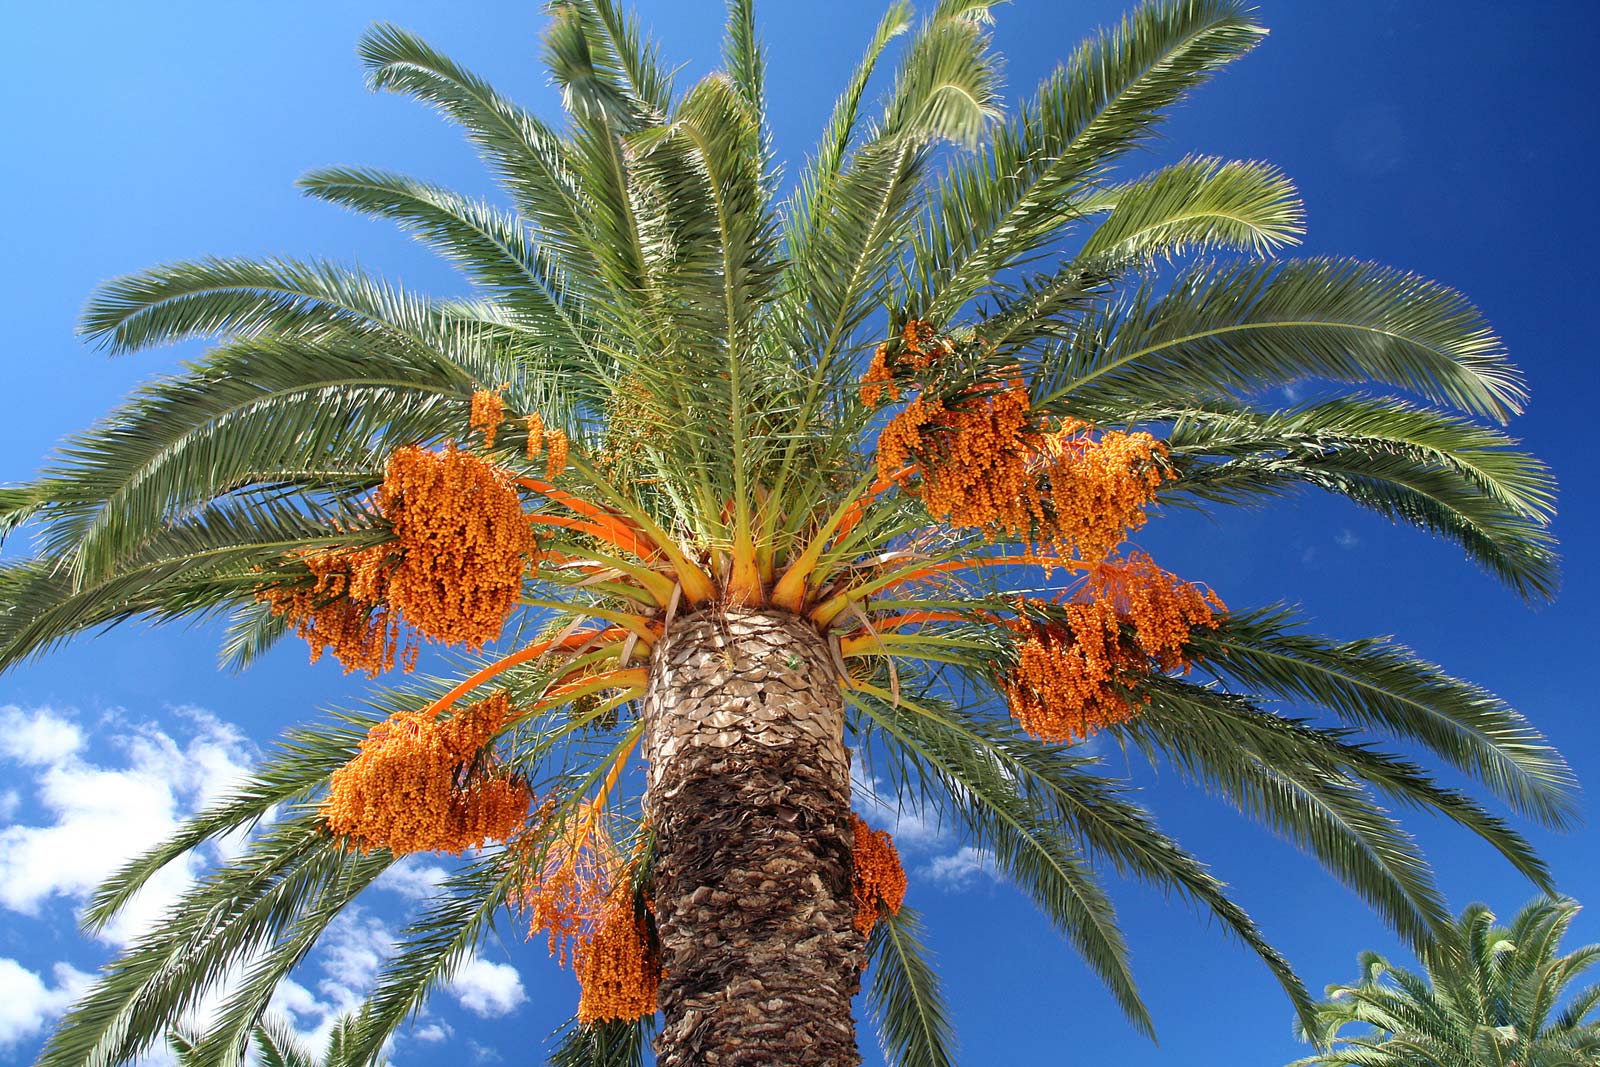 В Израиле вырастили вымершие финиковые пальмы из семян возрастом 2 тысячи лет